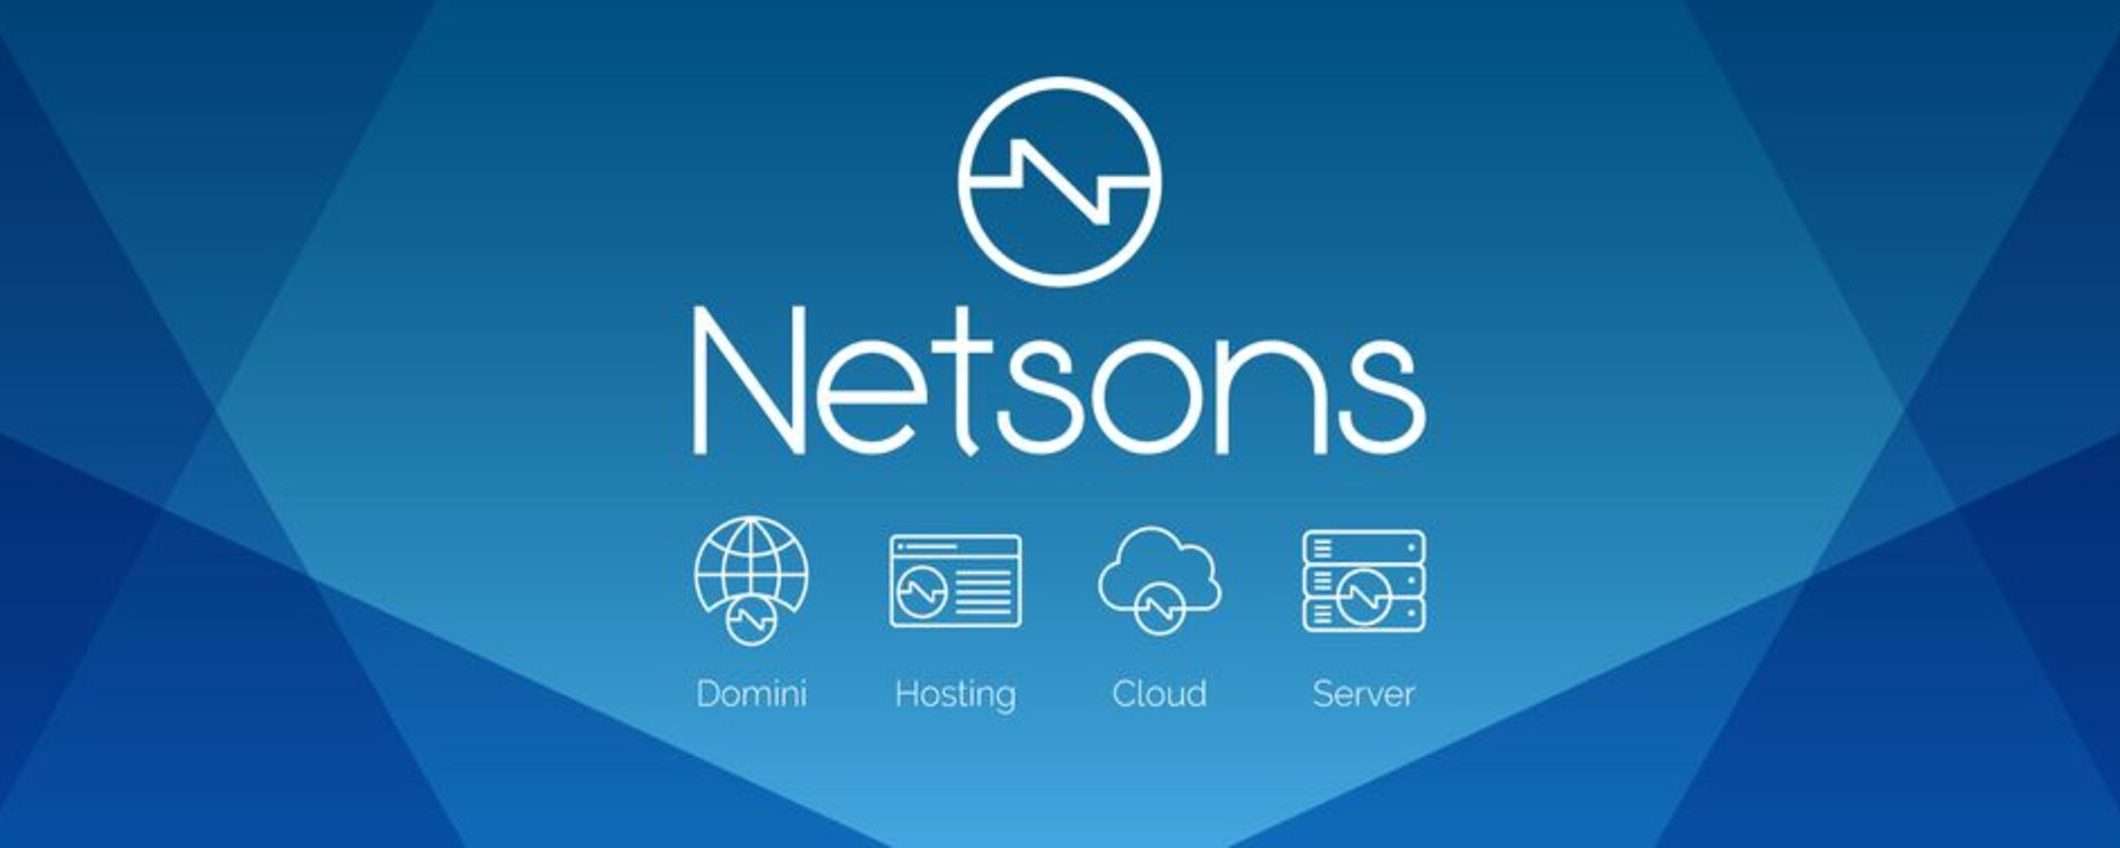 Netsons: servizio hosting gratuito per un anno